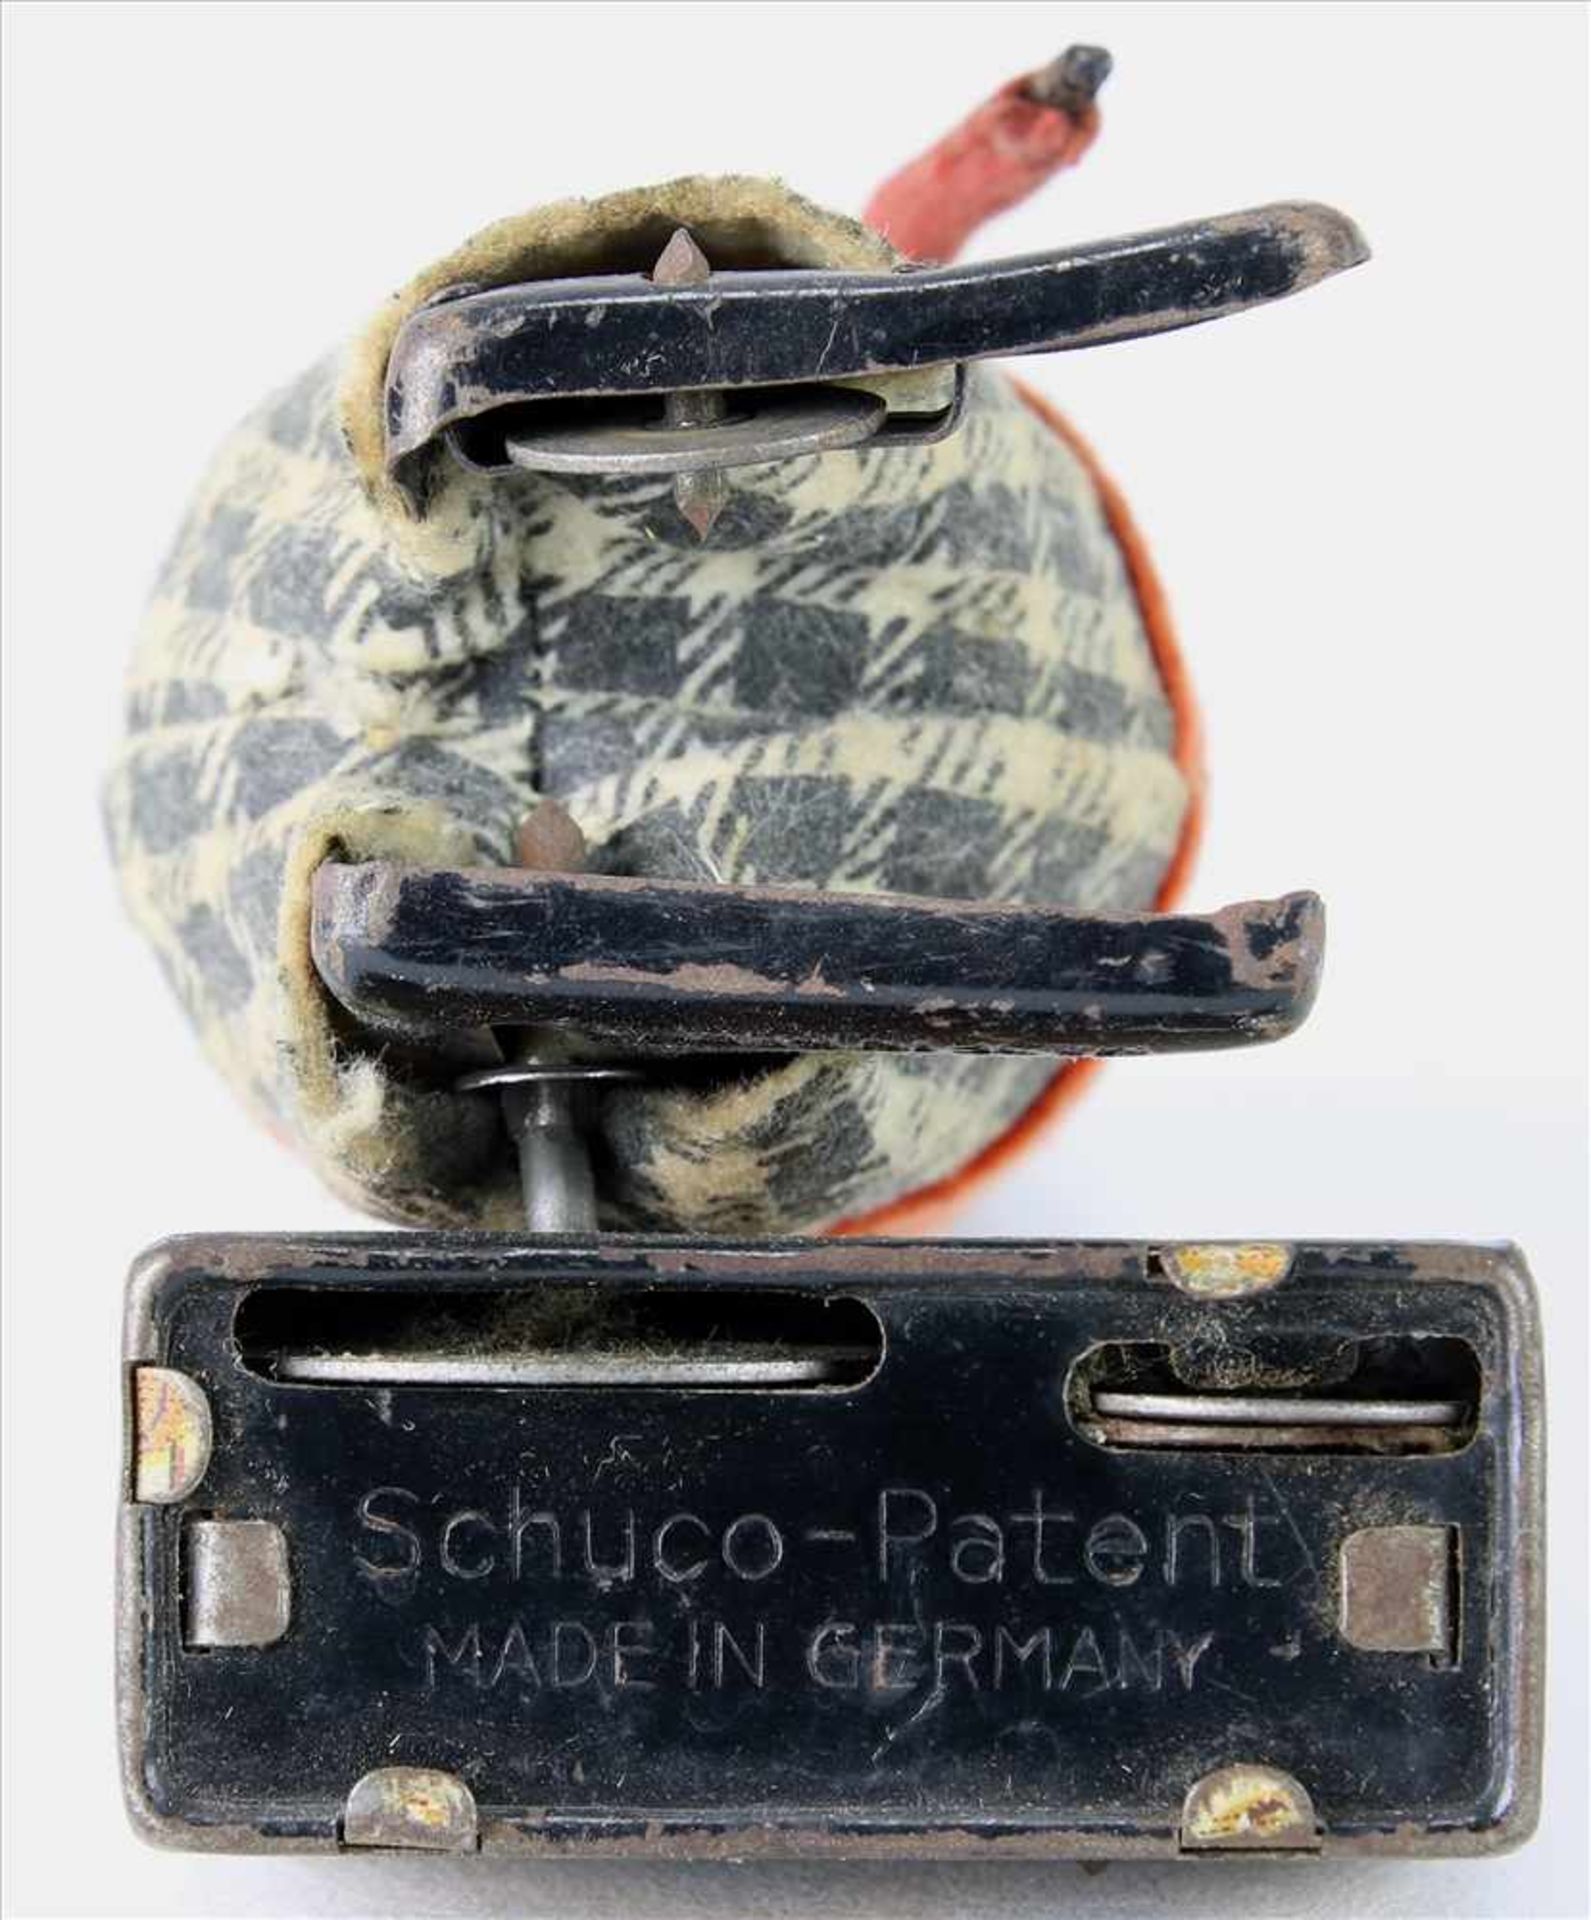 Schuco Kofferträger1930-er Jahre. Läuft im Kreis. Mit Schlüssel. Altersbedingter Zustand, - Bild 5 aus 5